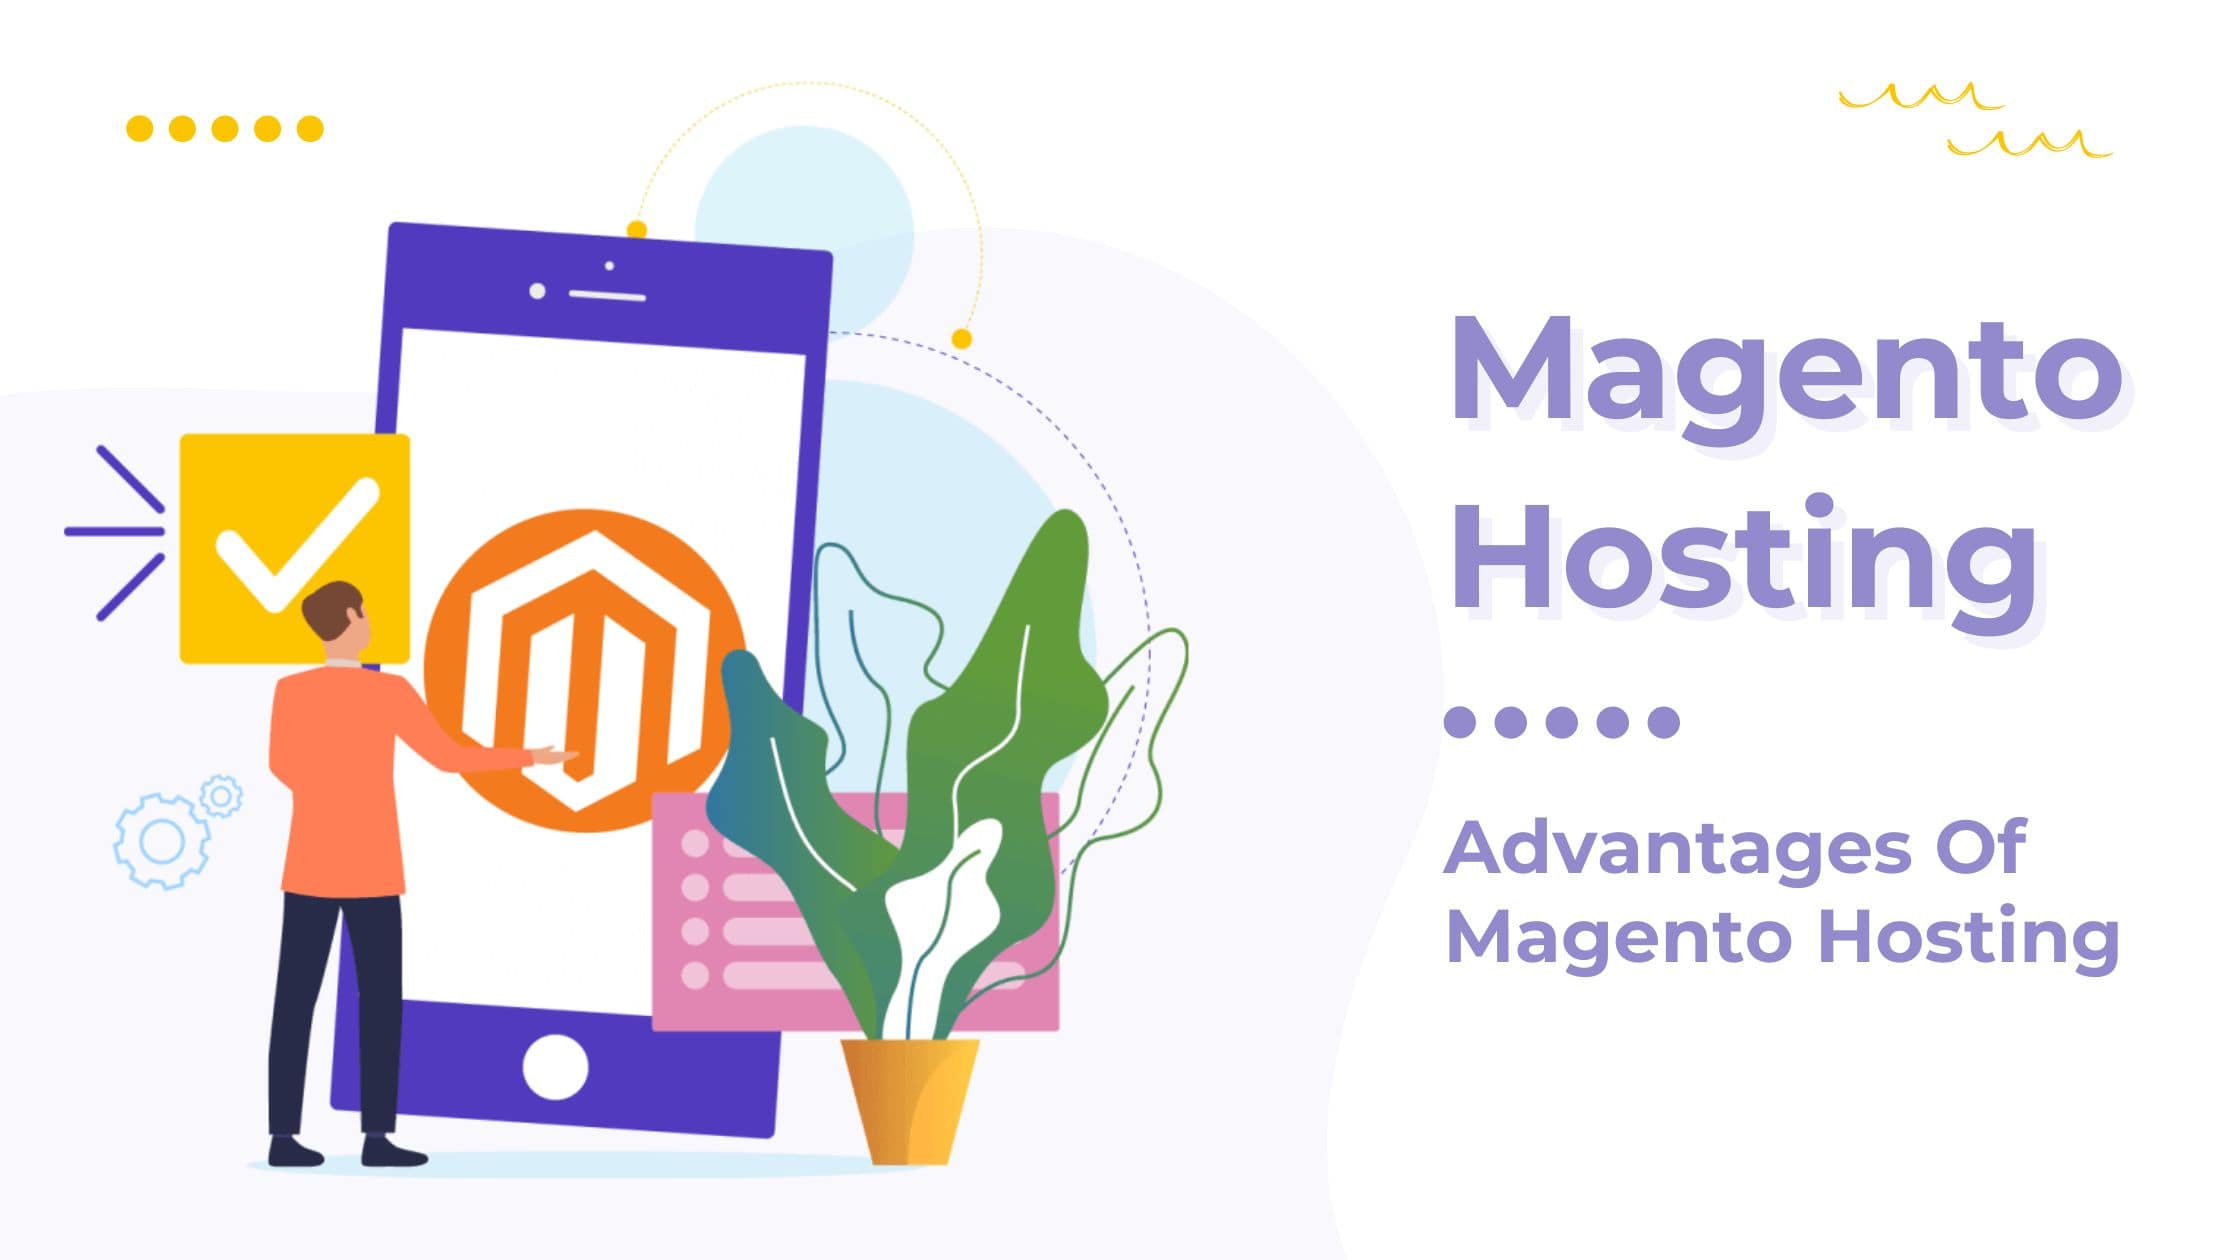 Magento Hosting: Advantages Of Magento Hosting